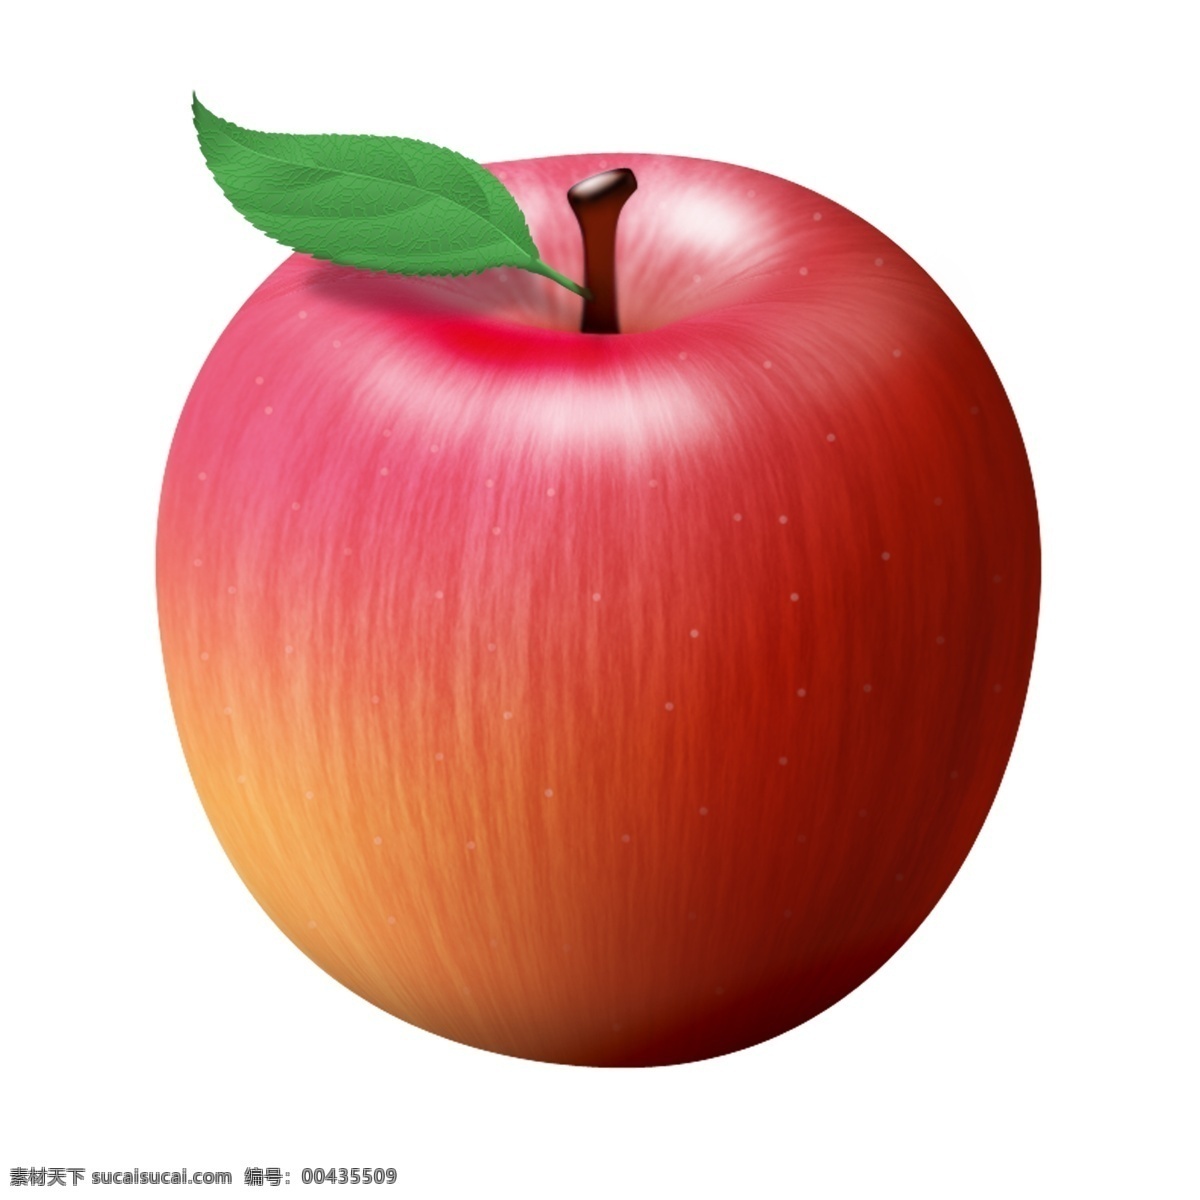 卡通 手绘 苹果 卡通苹果 矢量卡通苹果 手绘苹果 矢量手绘苹果 苹果素材 卡通水果 手绘水果 矢量水果 矢量卡通水果 矢量手绘水果 卡通水果素材 设 生物世界 水果